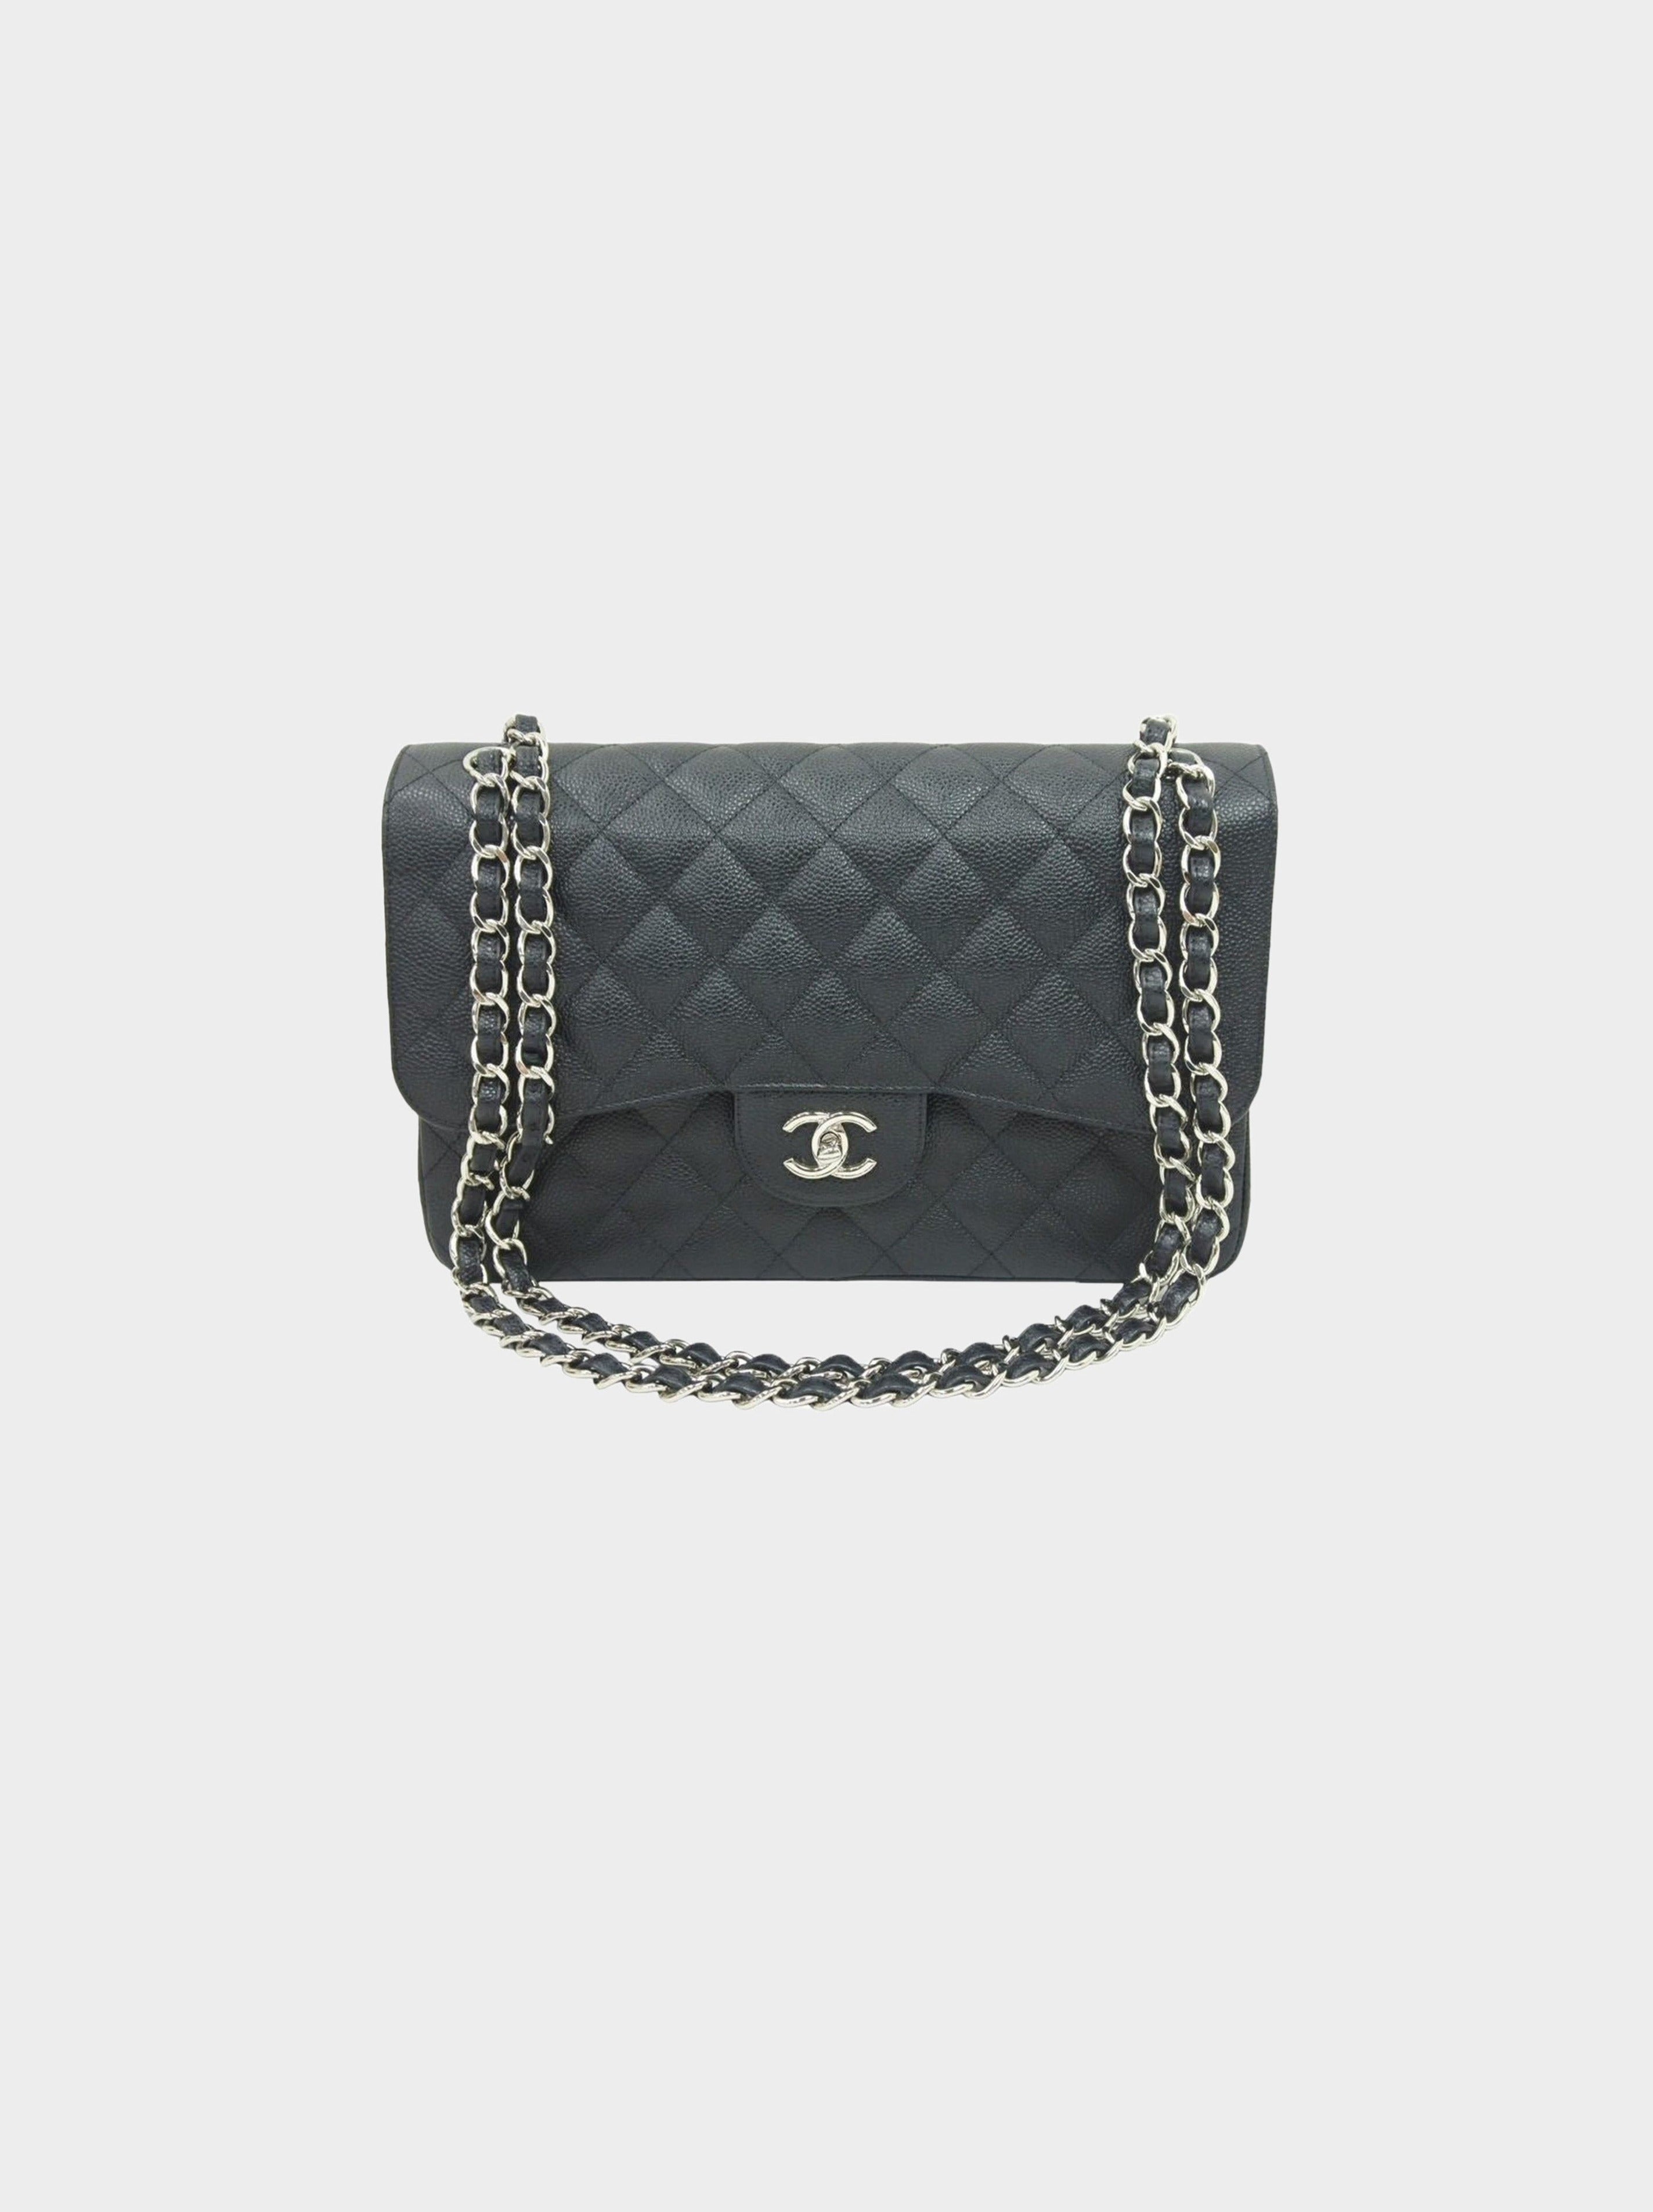 Chanel 2013 Dekamatrasse Black Caviar Skin Shoulder Bag · INTO